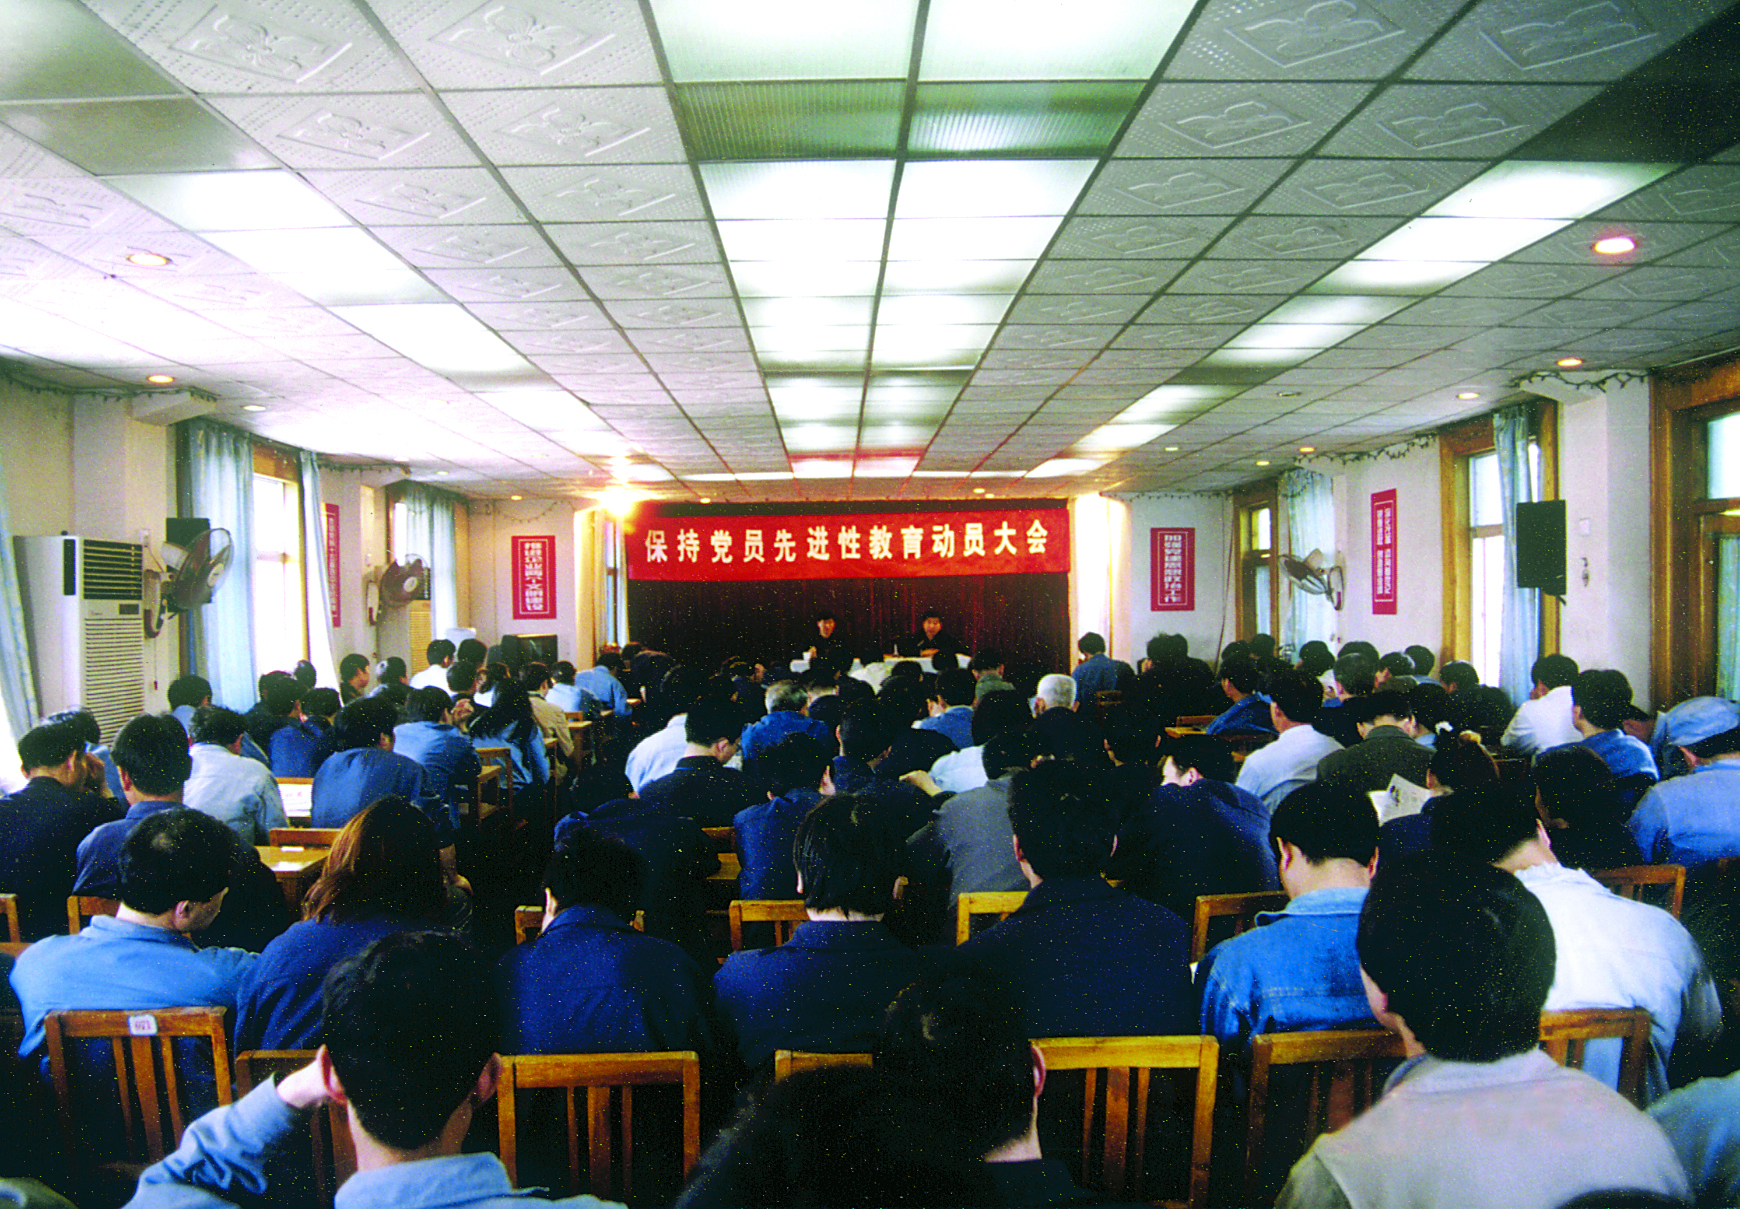 合并建立杭州电化集团公司龙山化工总厂党委会和纪律检査组